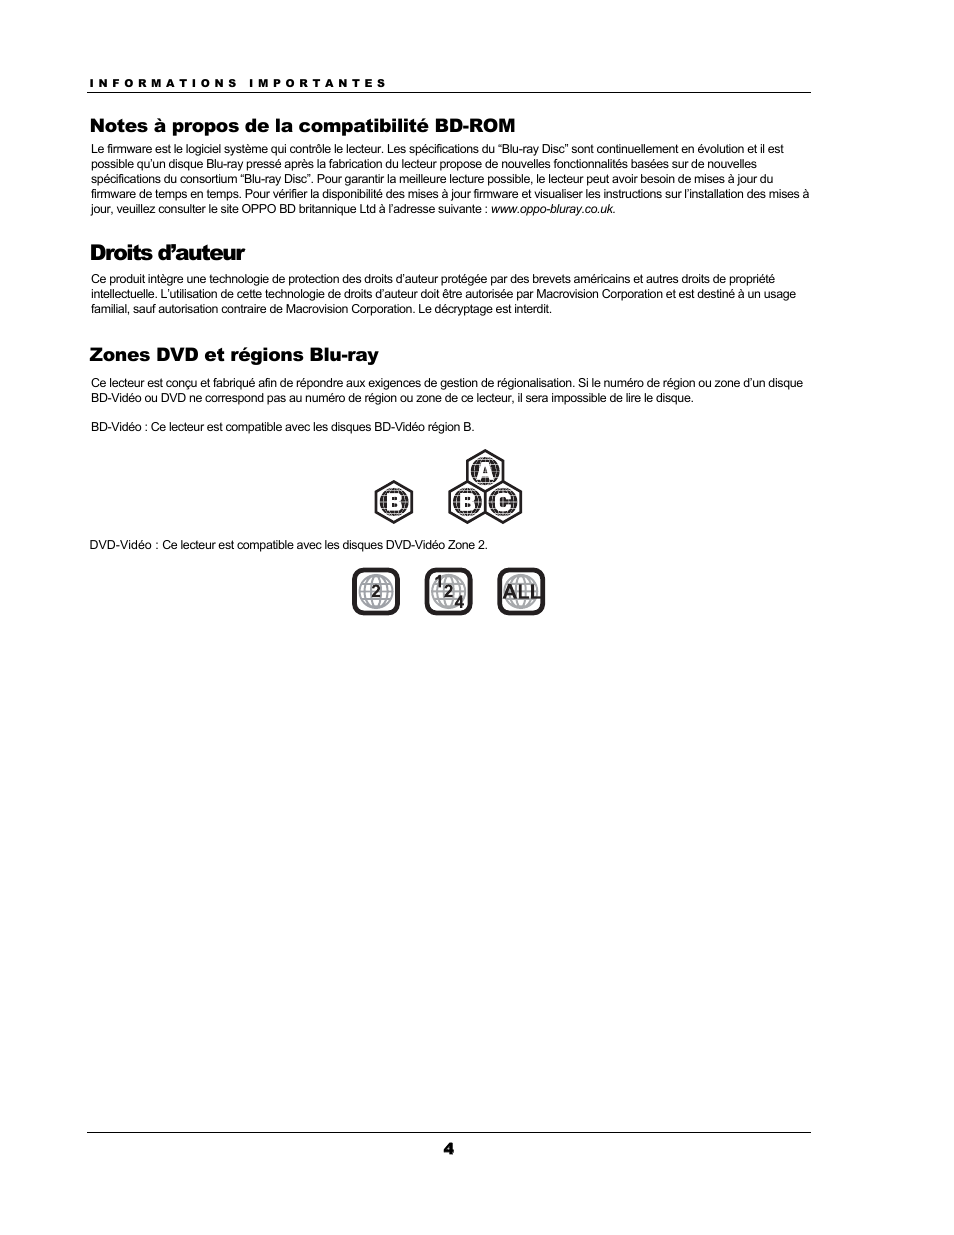 Droits d’auteur, Zones dvd et régions blu-ray | Oppo BDP-93EU Manuel d'utilisation | Page 10 / 92